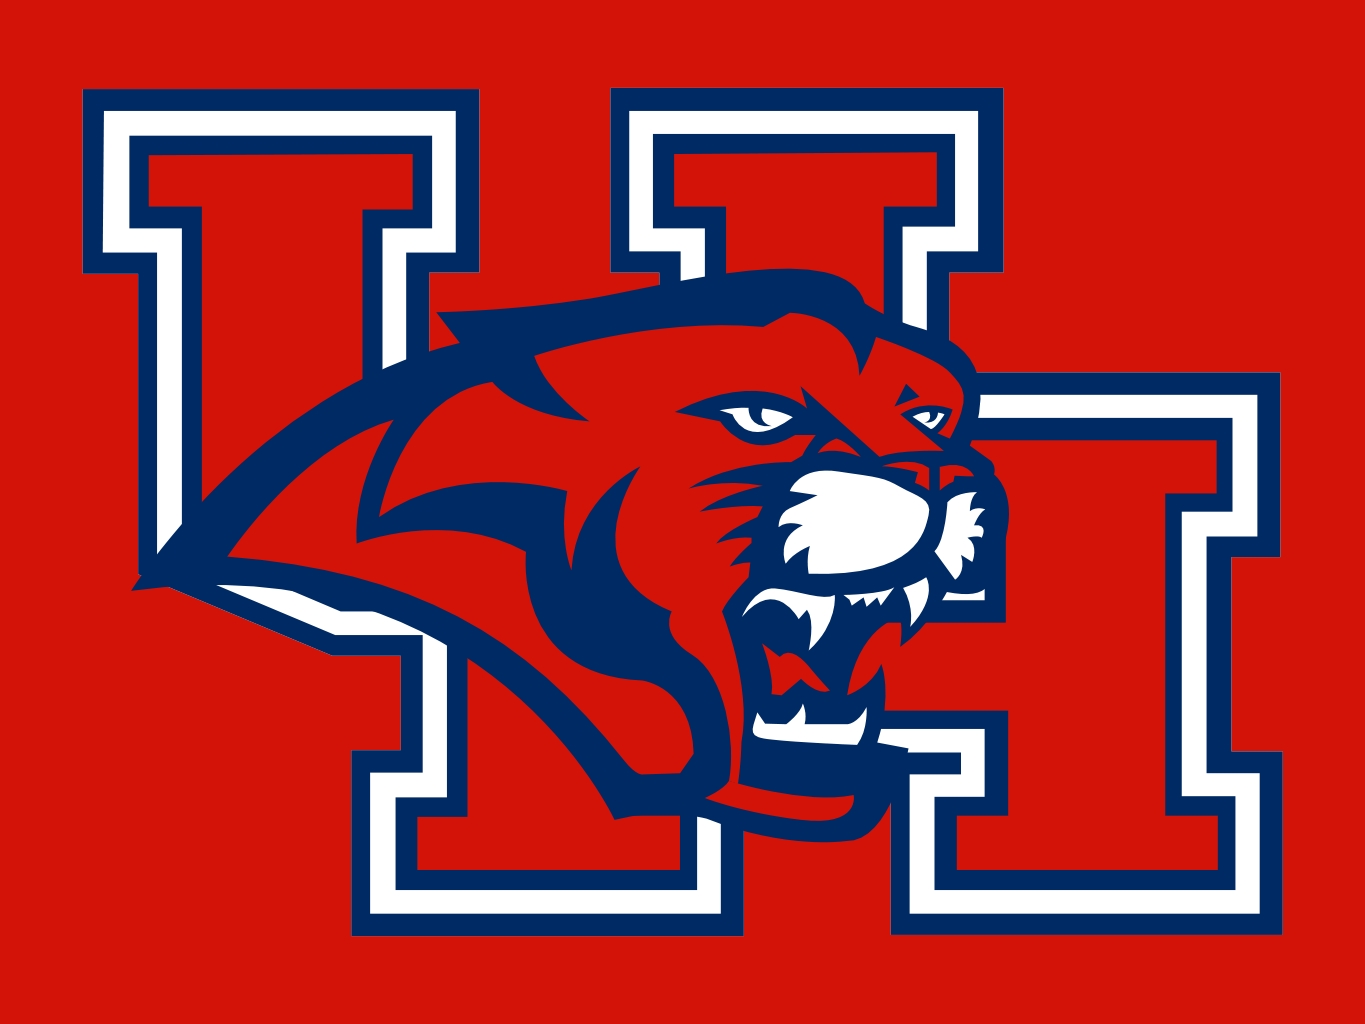 houston cougars new logo